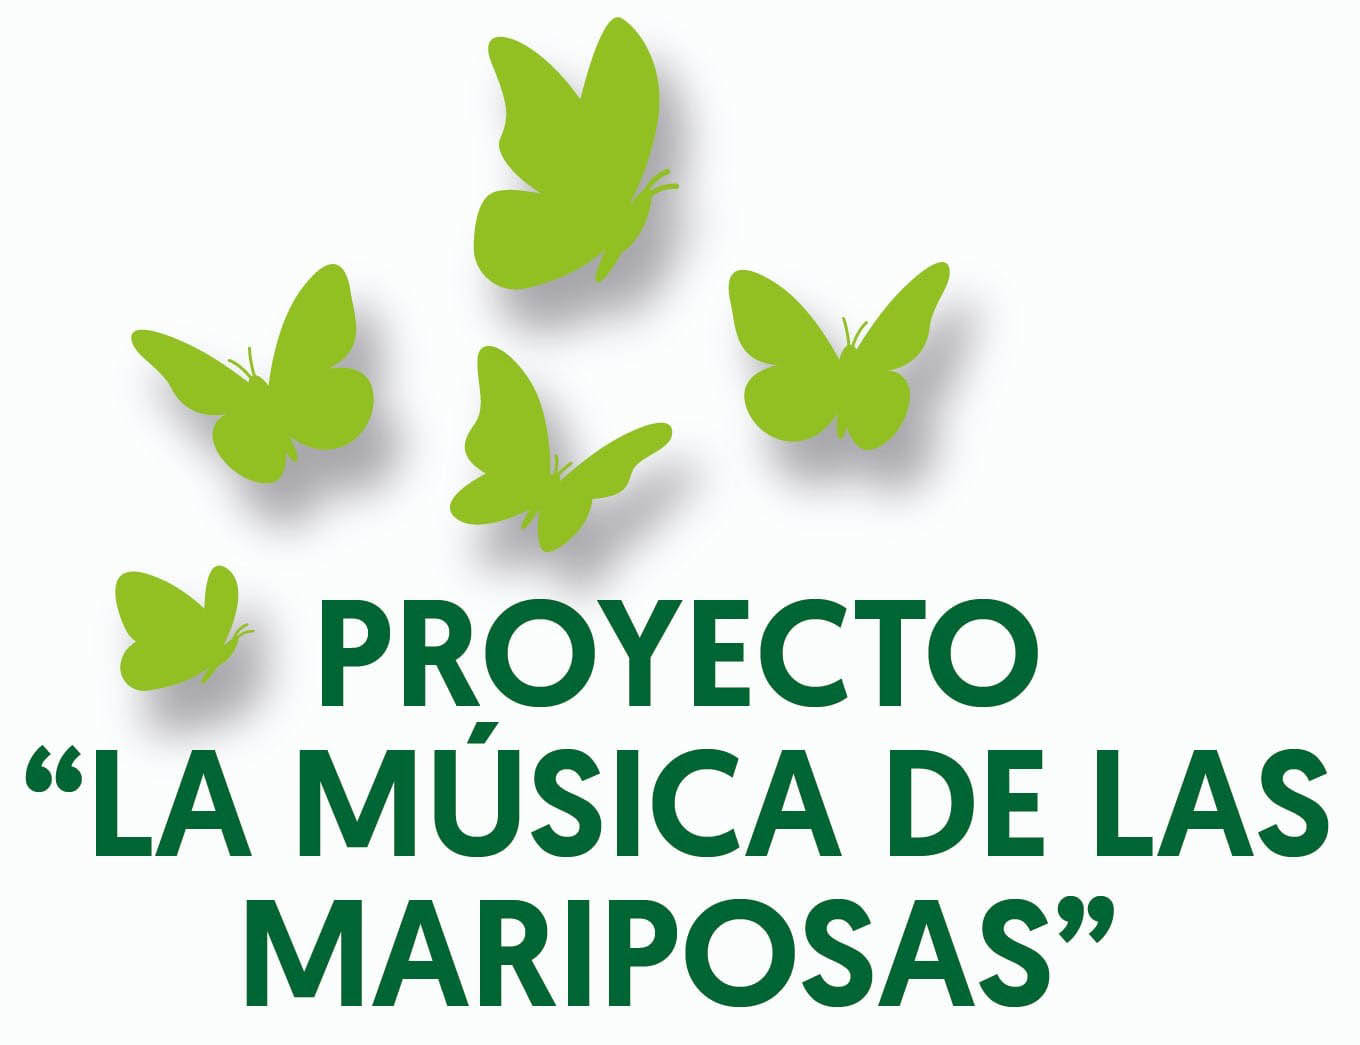 Proyecto “La música de las mariposas”